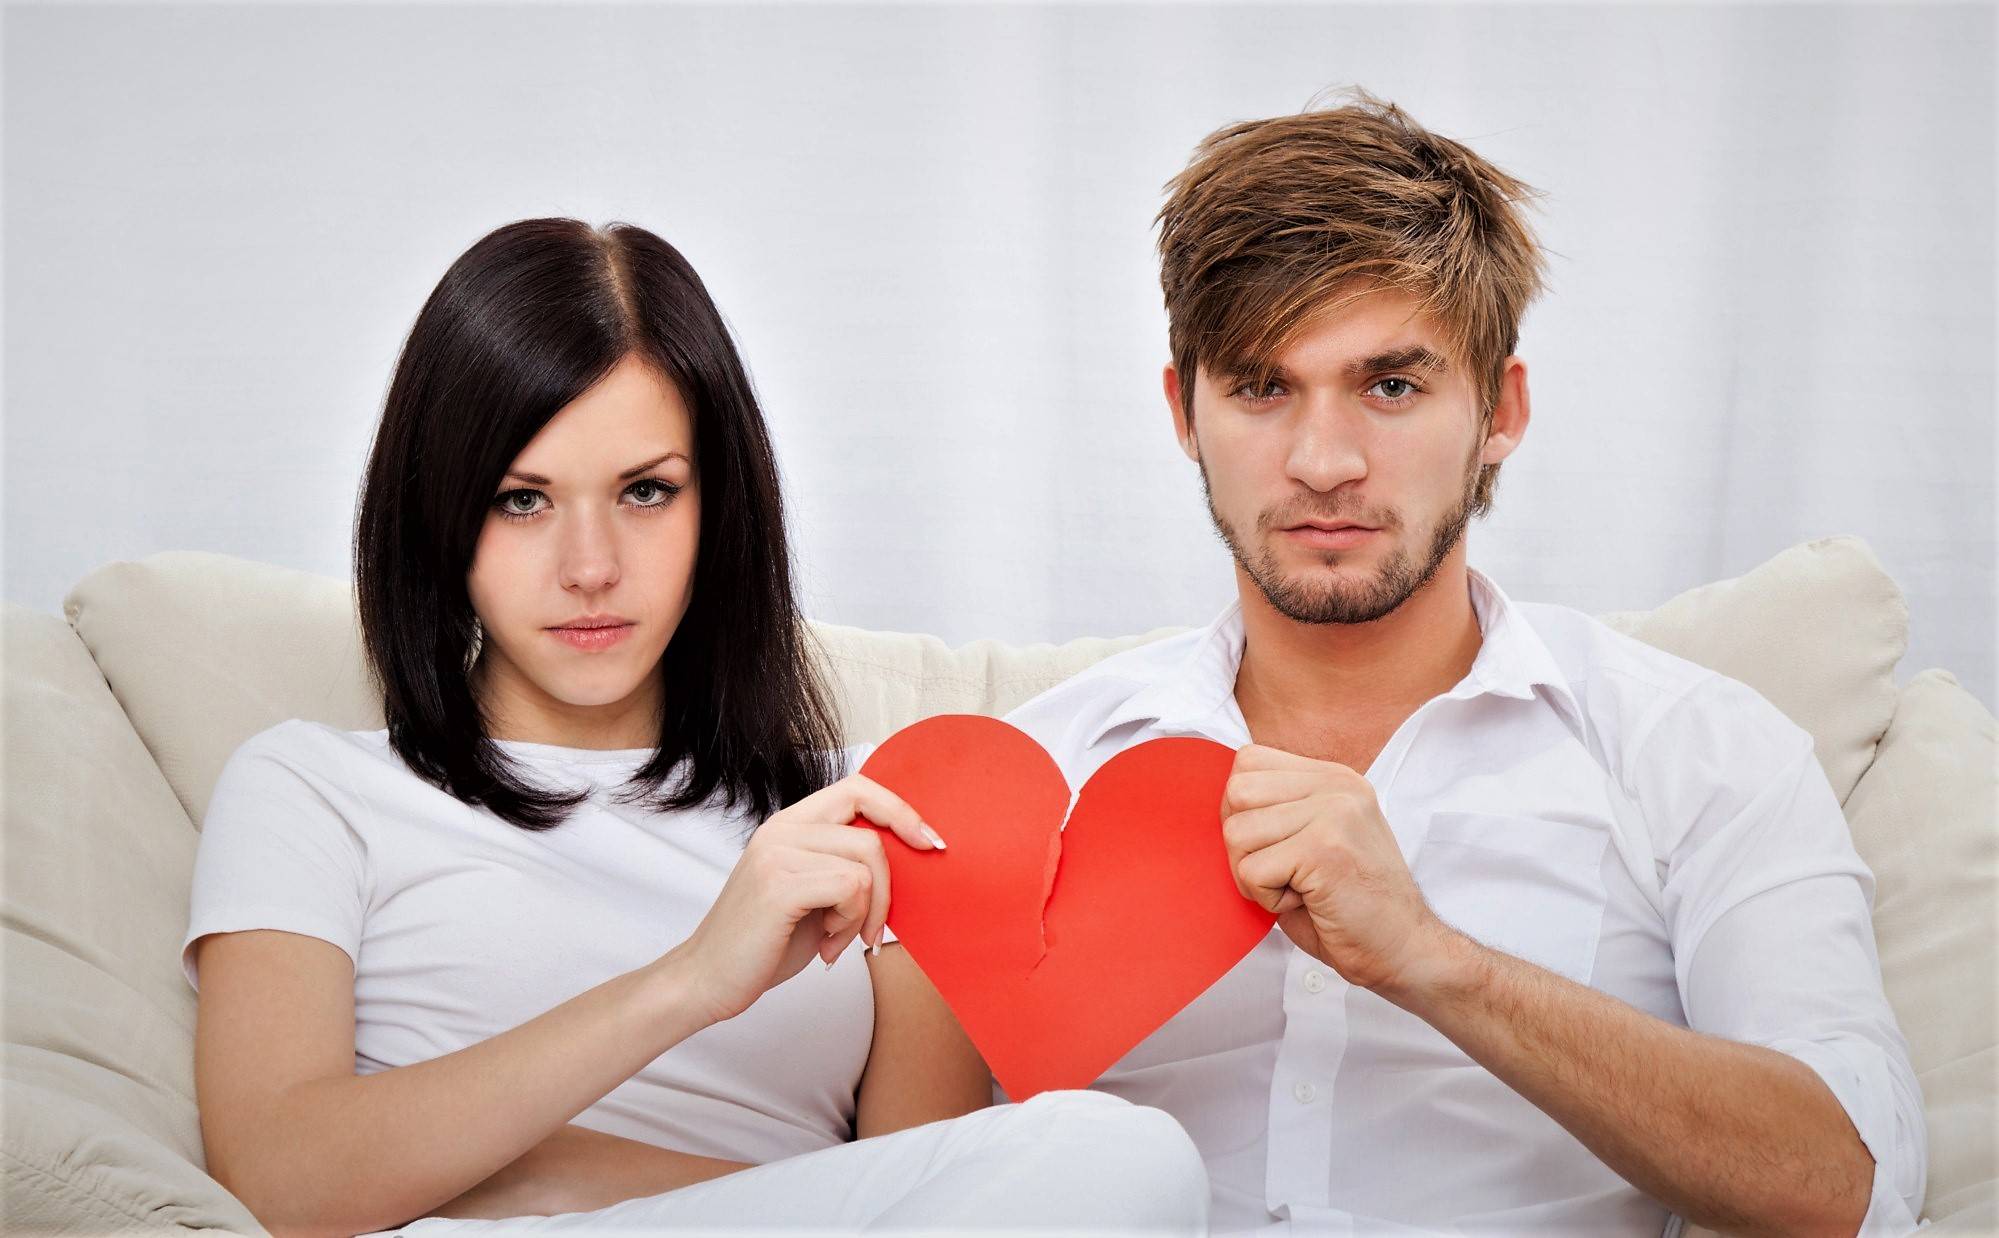 Крепкие партнёрские отношения: как их построить и не разрушить? советует психолог / skillbox media